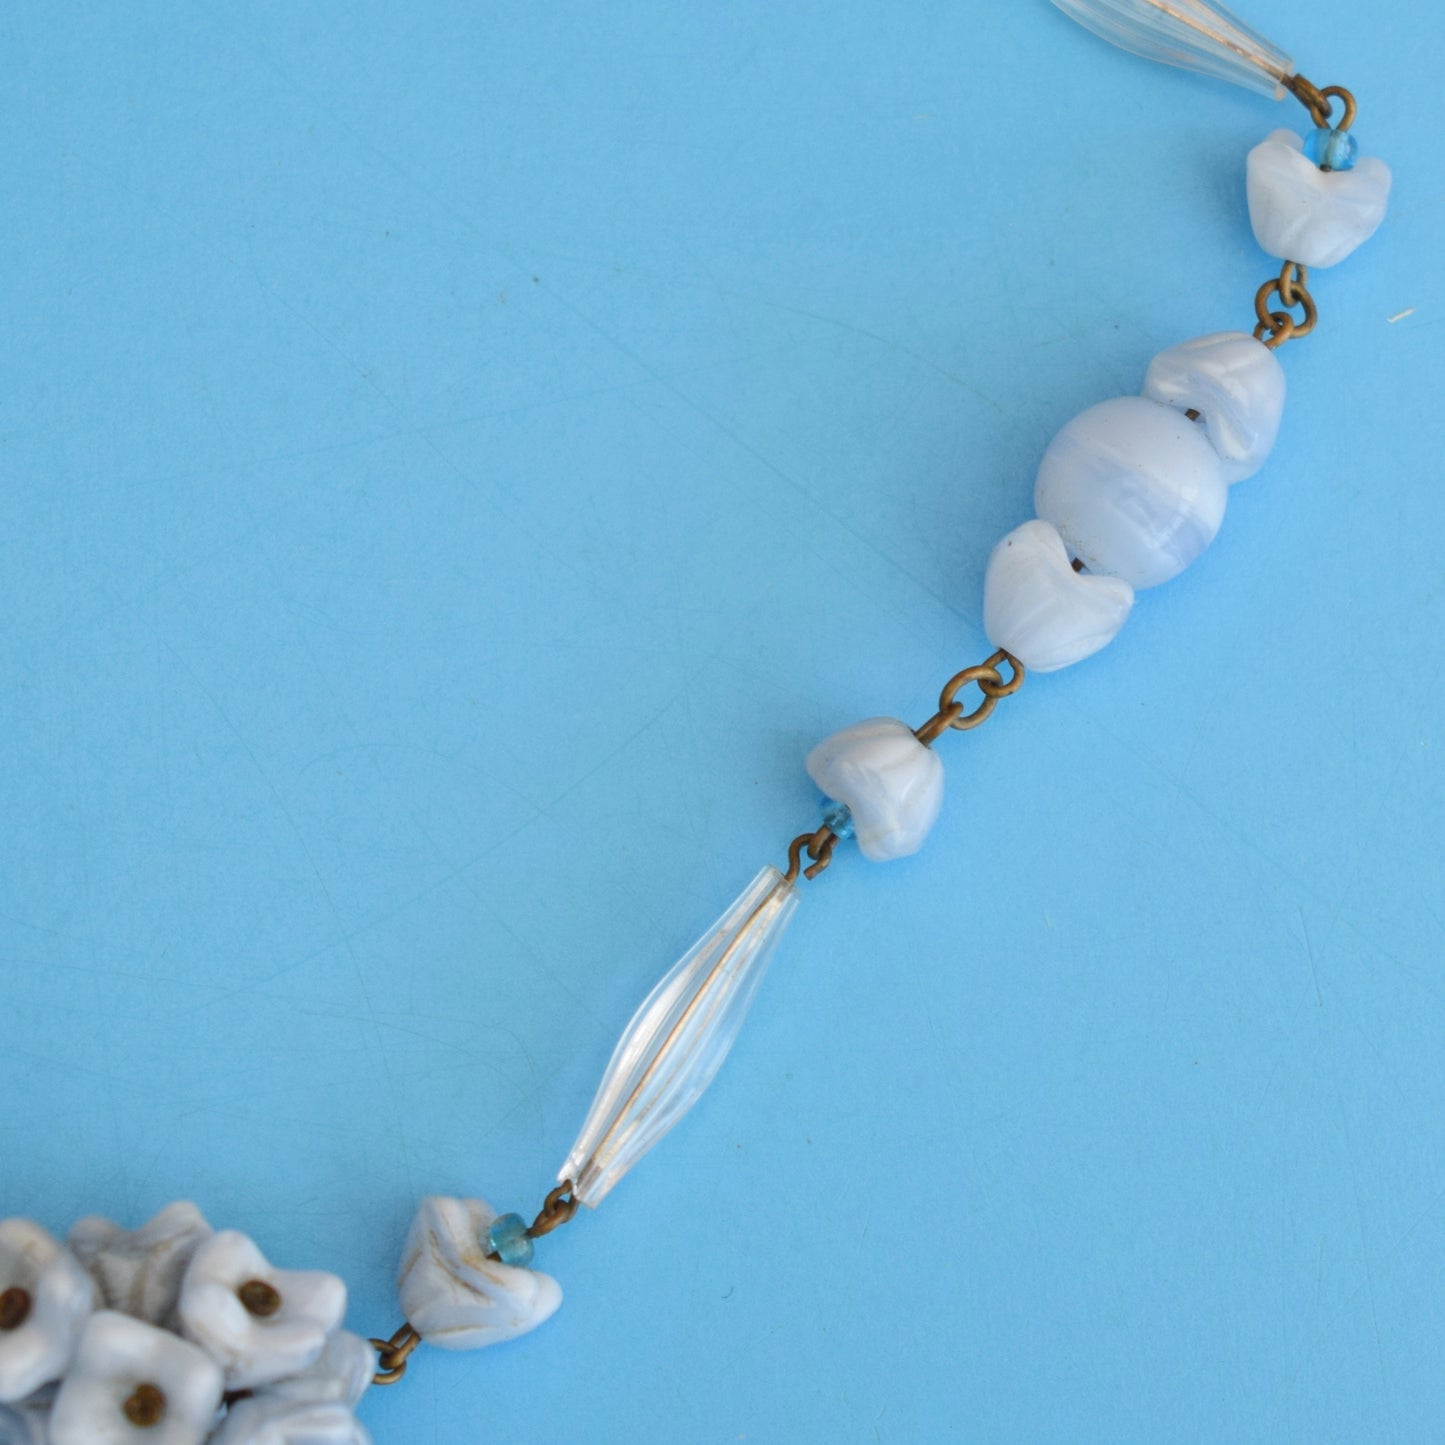 Vintage 1950s Venetian Glass Necklace - Blue Flowers